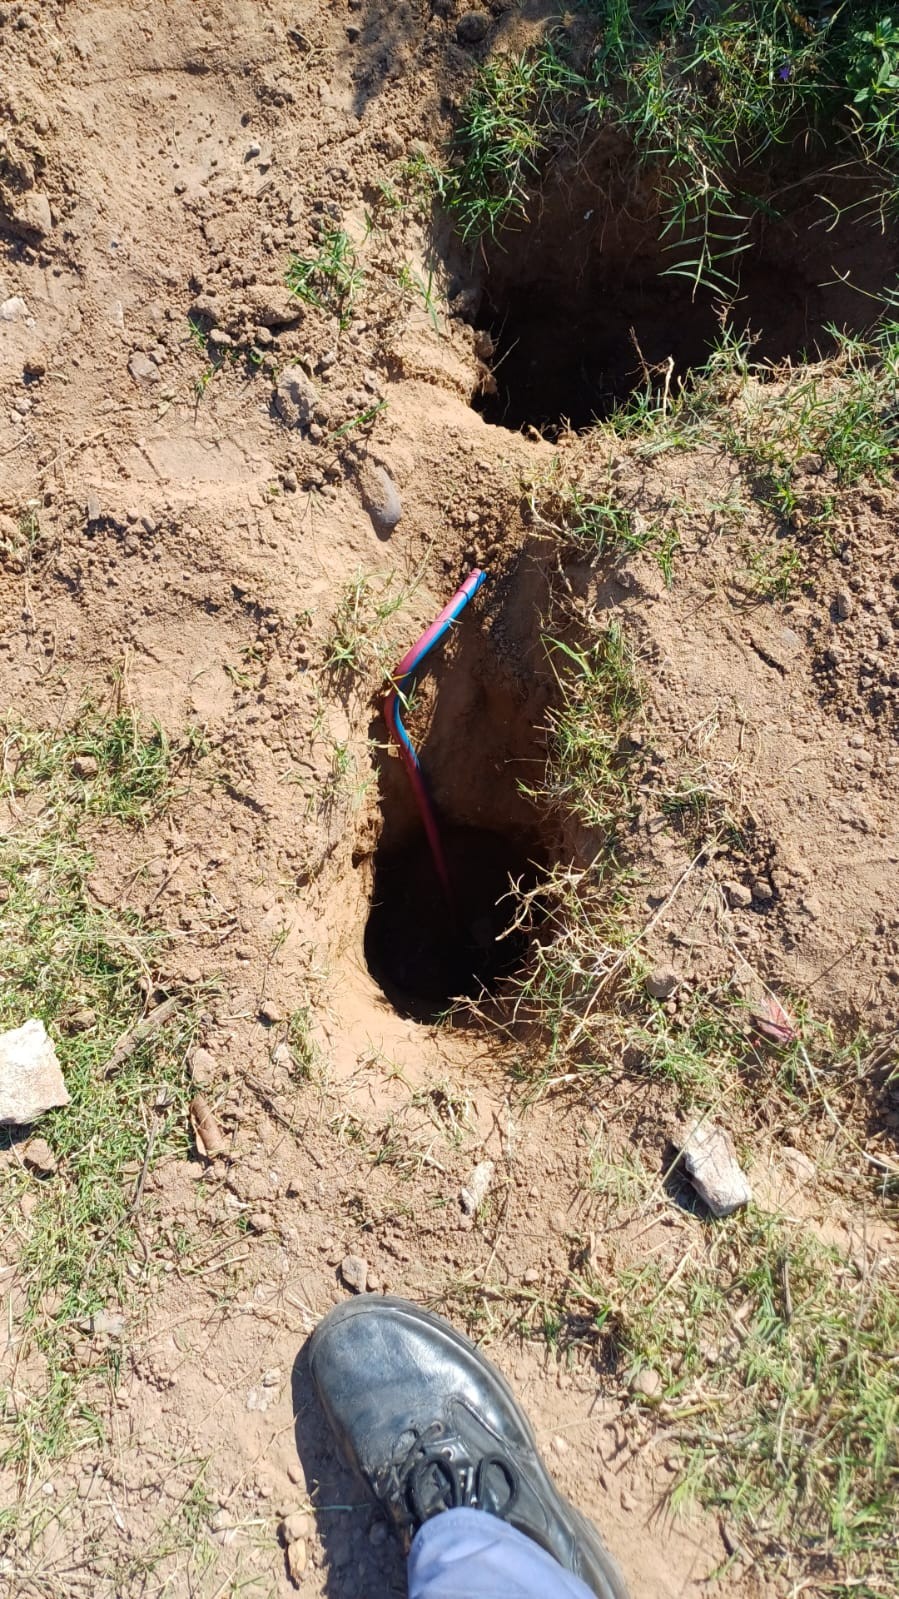  Descubren pozos en Barranqueras, cavados para robar cables